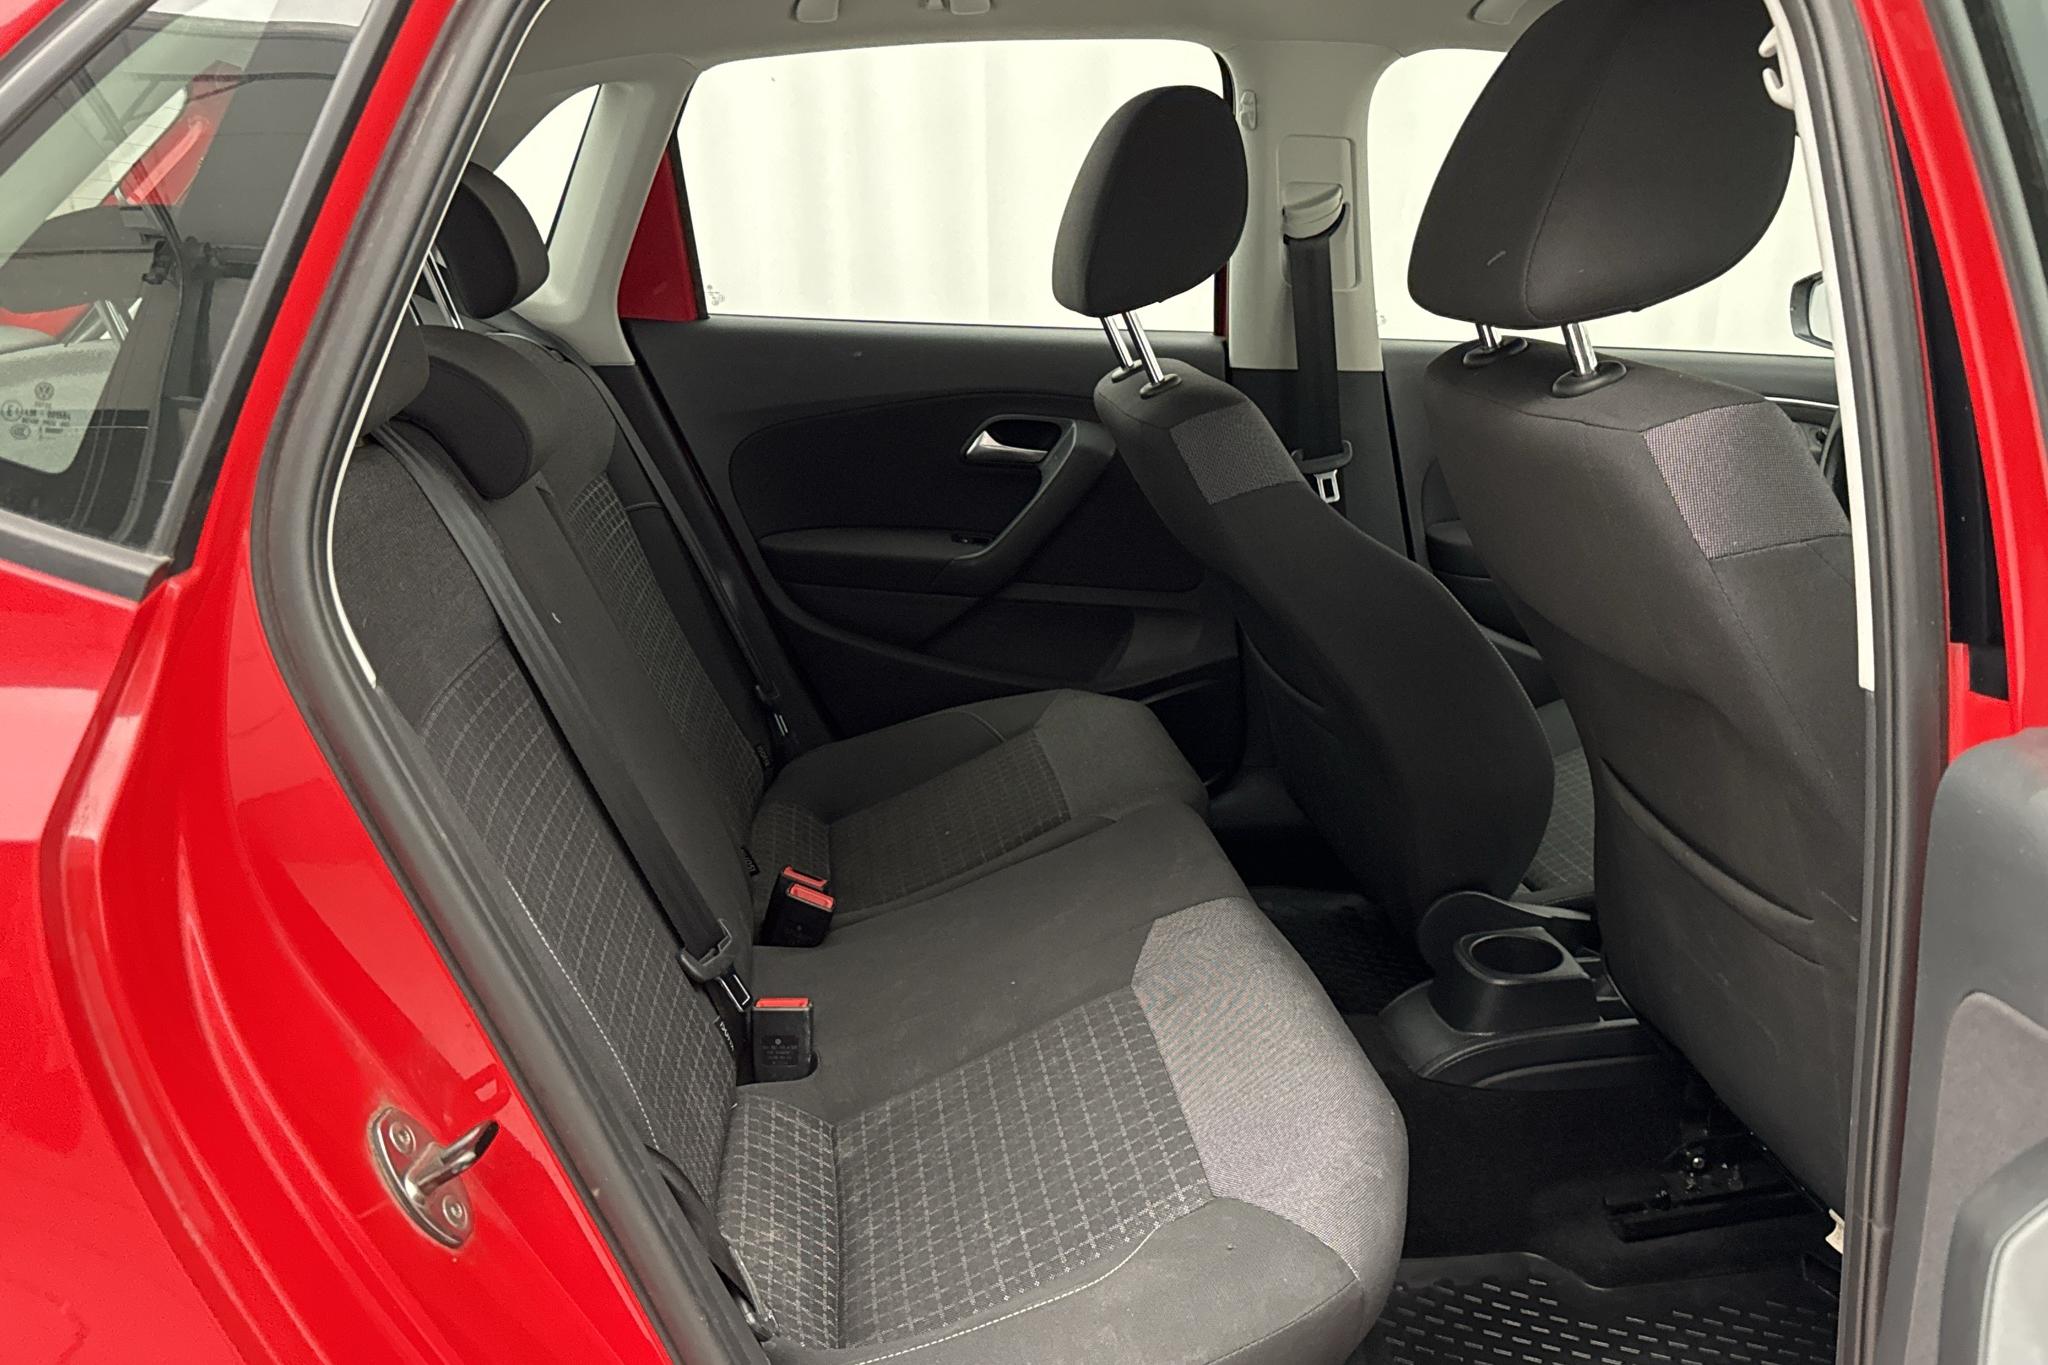 VW Polo 1.2 TSI 5dr (90hk) - 16 300 km - Manuaalinen - punainen - 2016